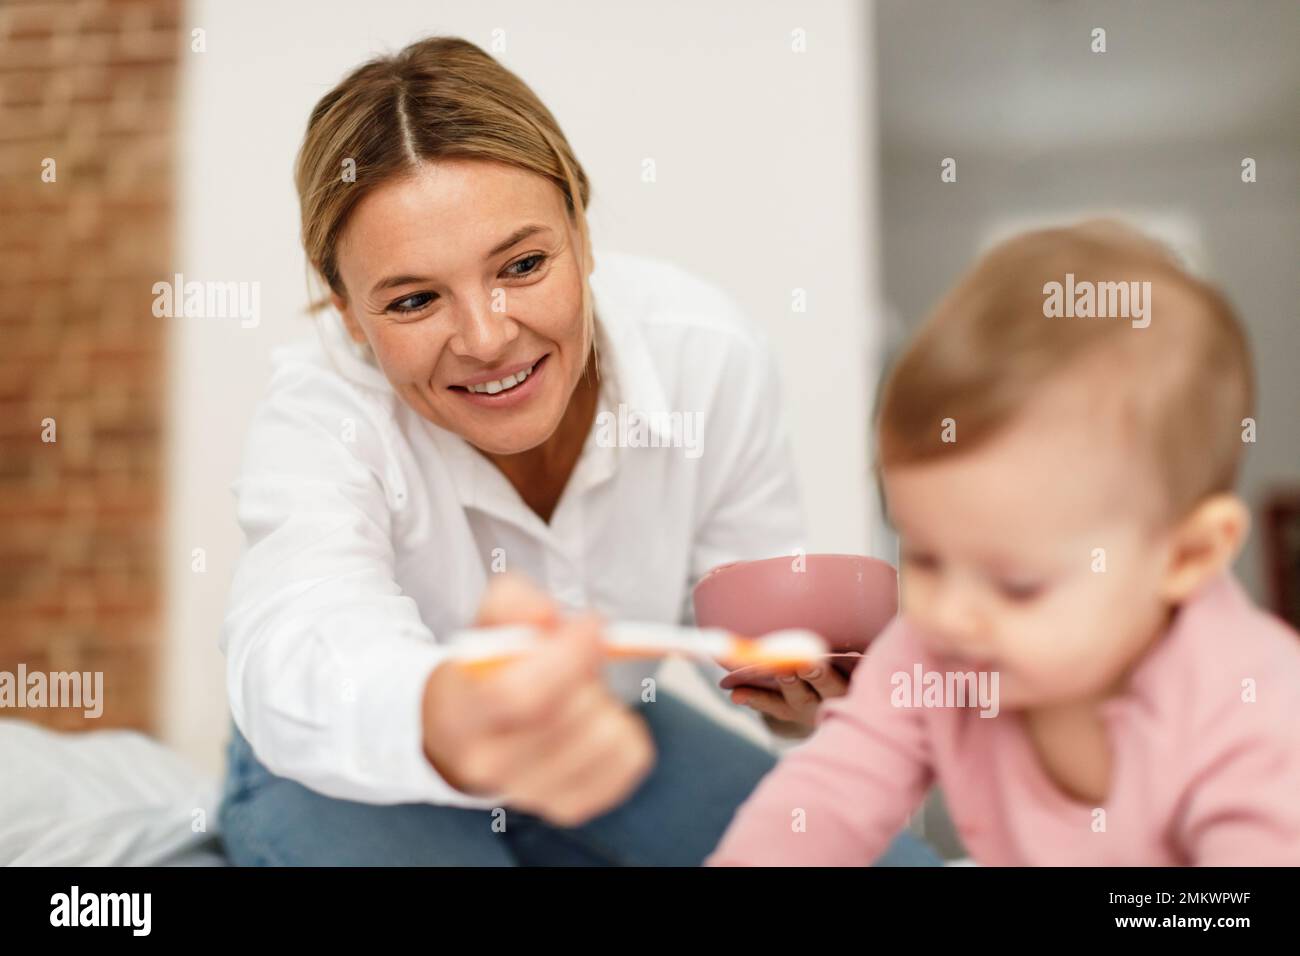 Nutrizione del bambino. Madre felice che alimenta la ragazza cute del bambino dal cucchiaio, mamma premurosa che dà il cibo sano a sua figlia nel paese Foto Stock